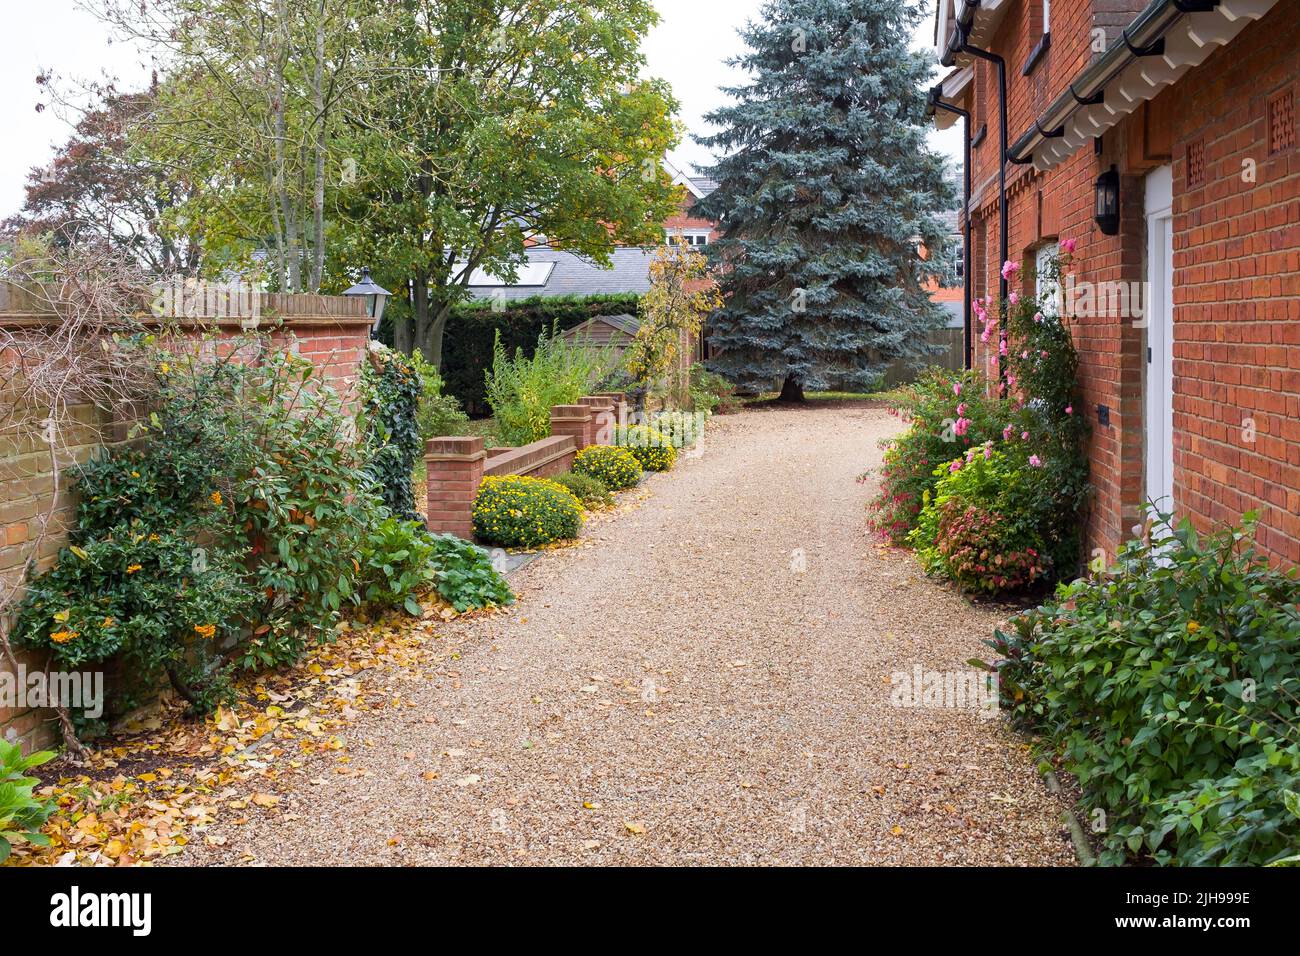 Grande maison du patrimoine anglais et jardin en automne avec une allée de gravier. Buckinghamshire, Angleterre, Royaume-Uni Banque D'Images